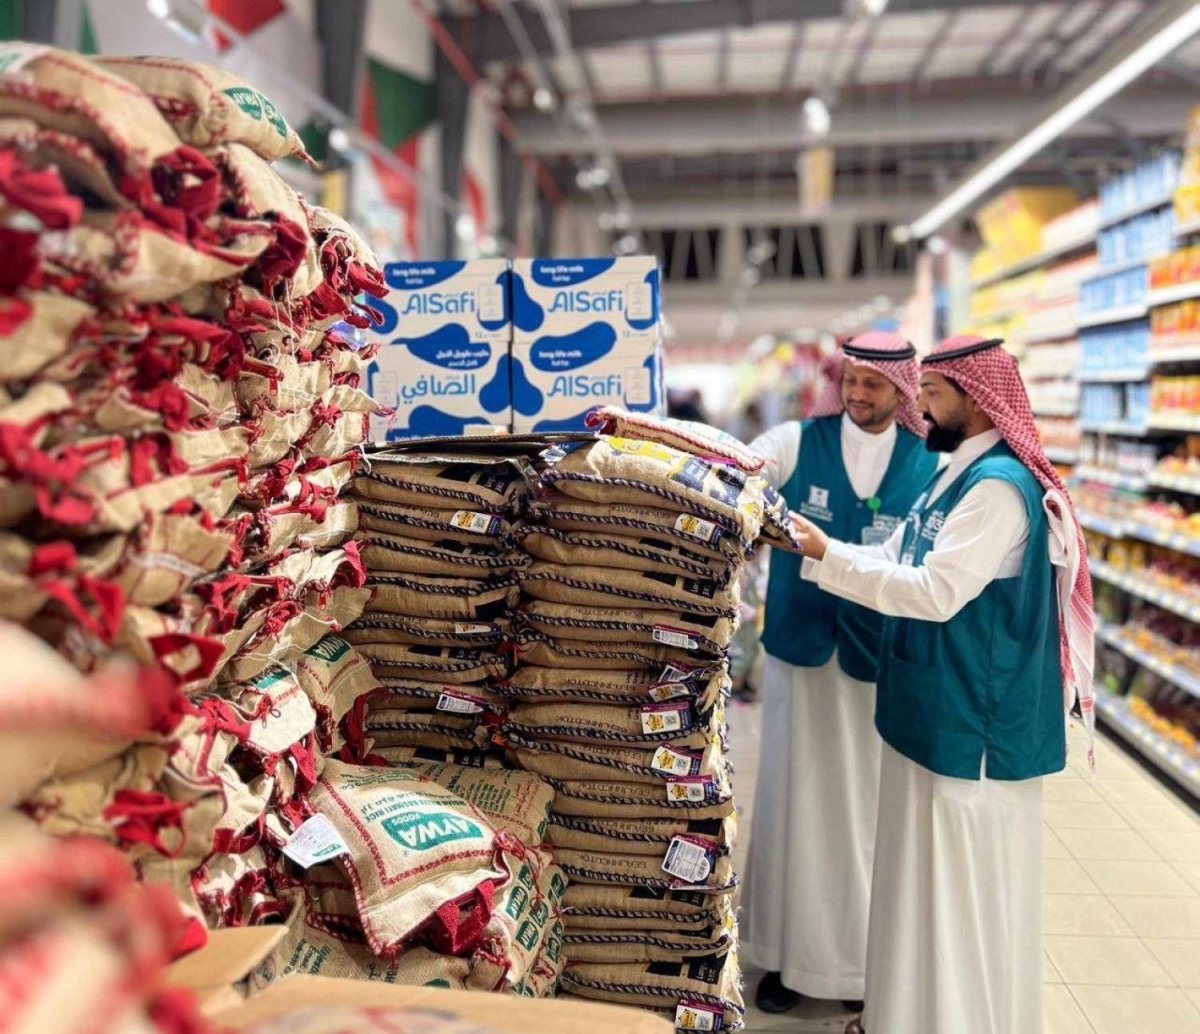 المملكة العربية السعودية تنتج “زكاة الفطر” لتعظيم الأثر الاقتصادي والاجتماعي